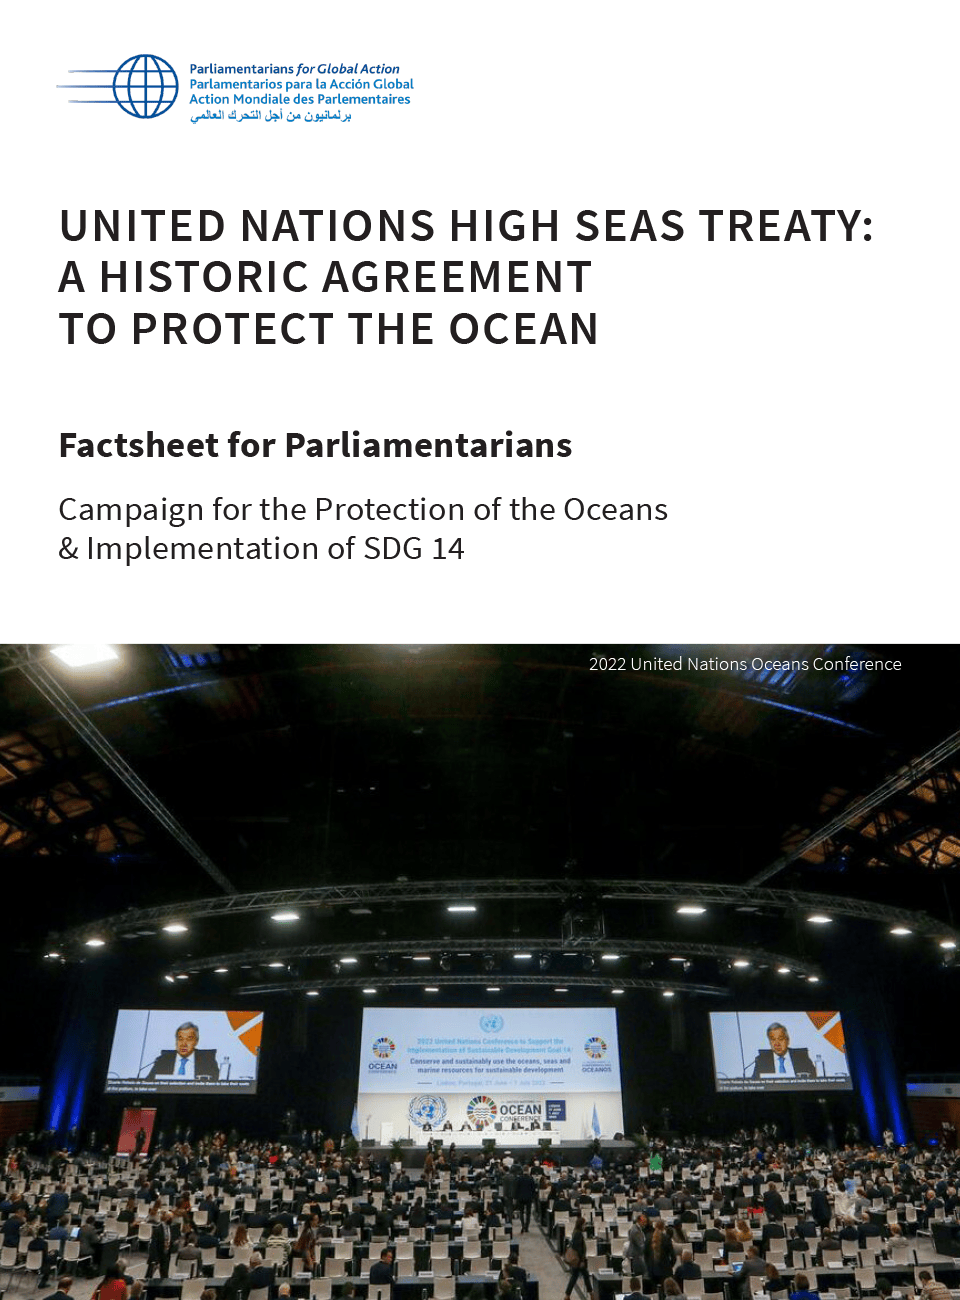 Fiche d’information à l’intention des parlementaires : Le Traité De La Haute Mer : Un Accord Historique Pour Protéger L’Océan